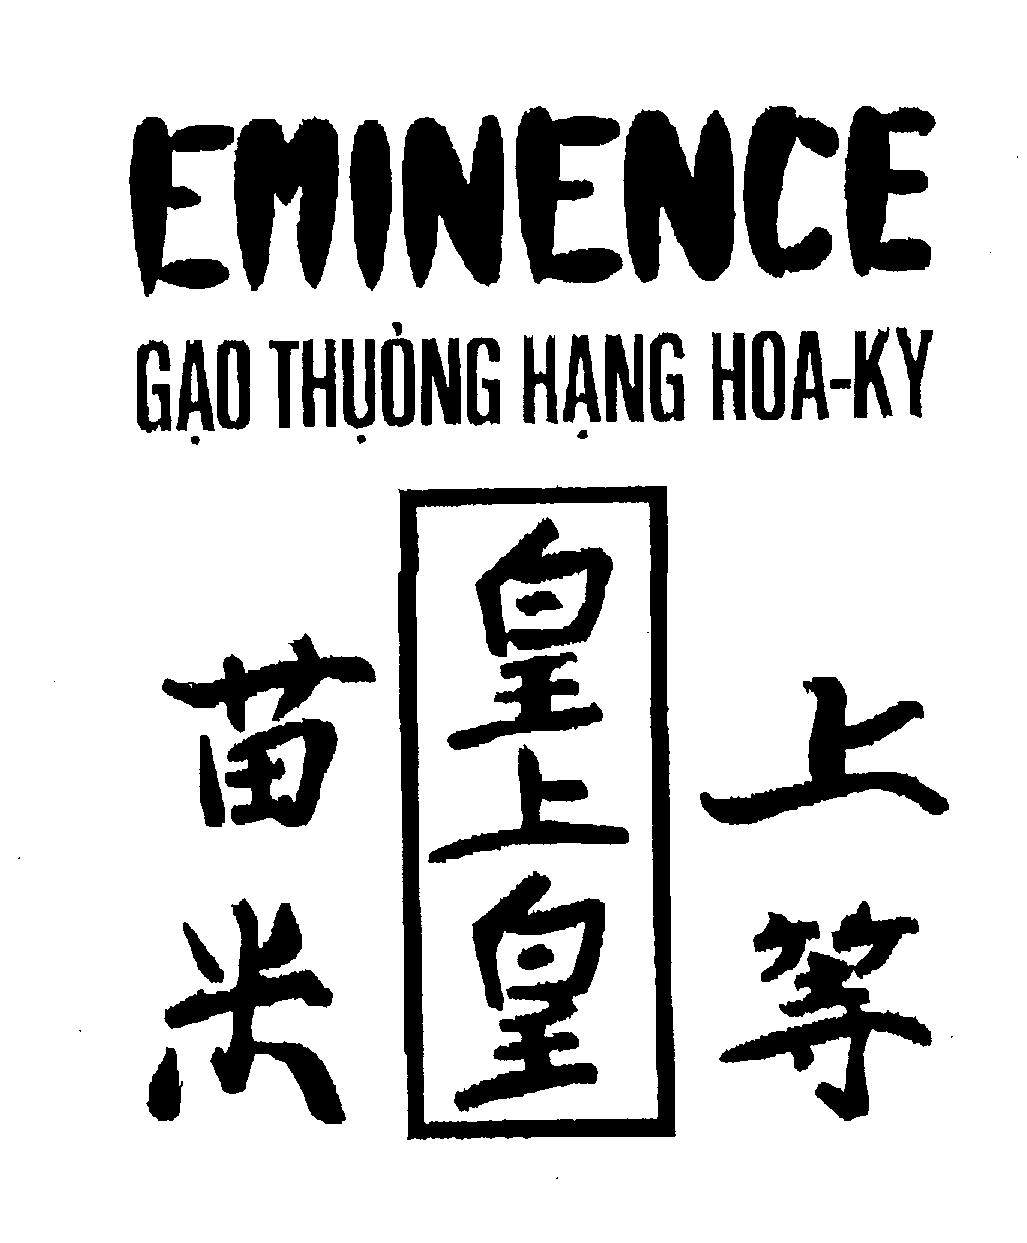  EMINENCE GAO THUONG HANG HOA-KY